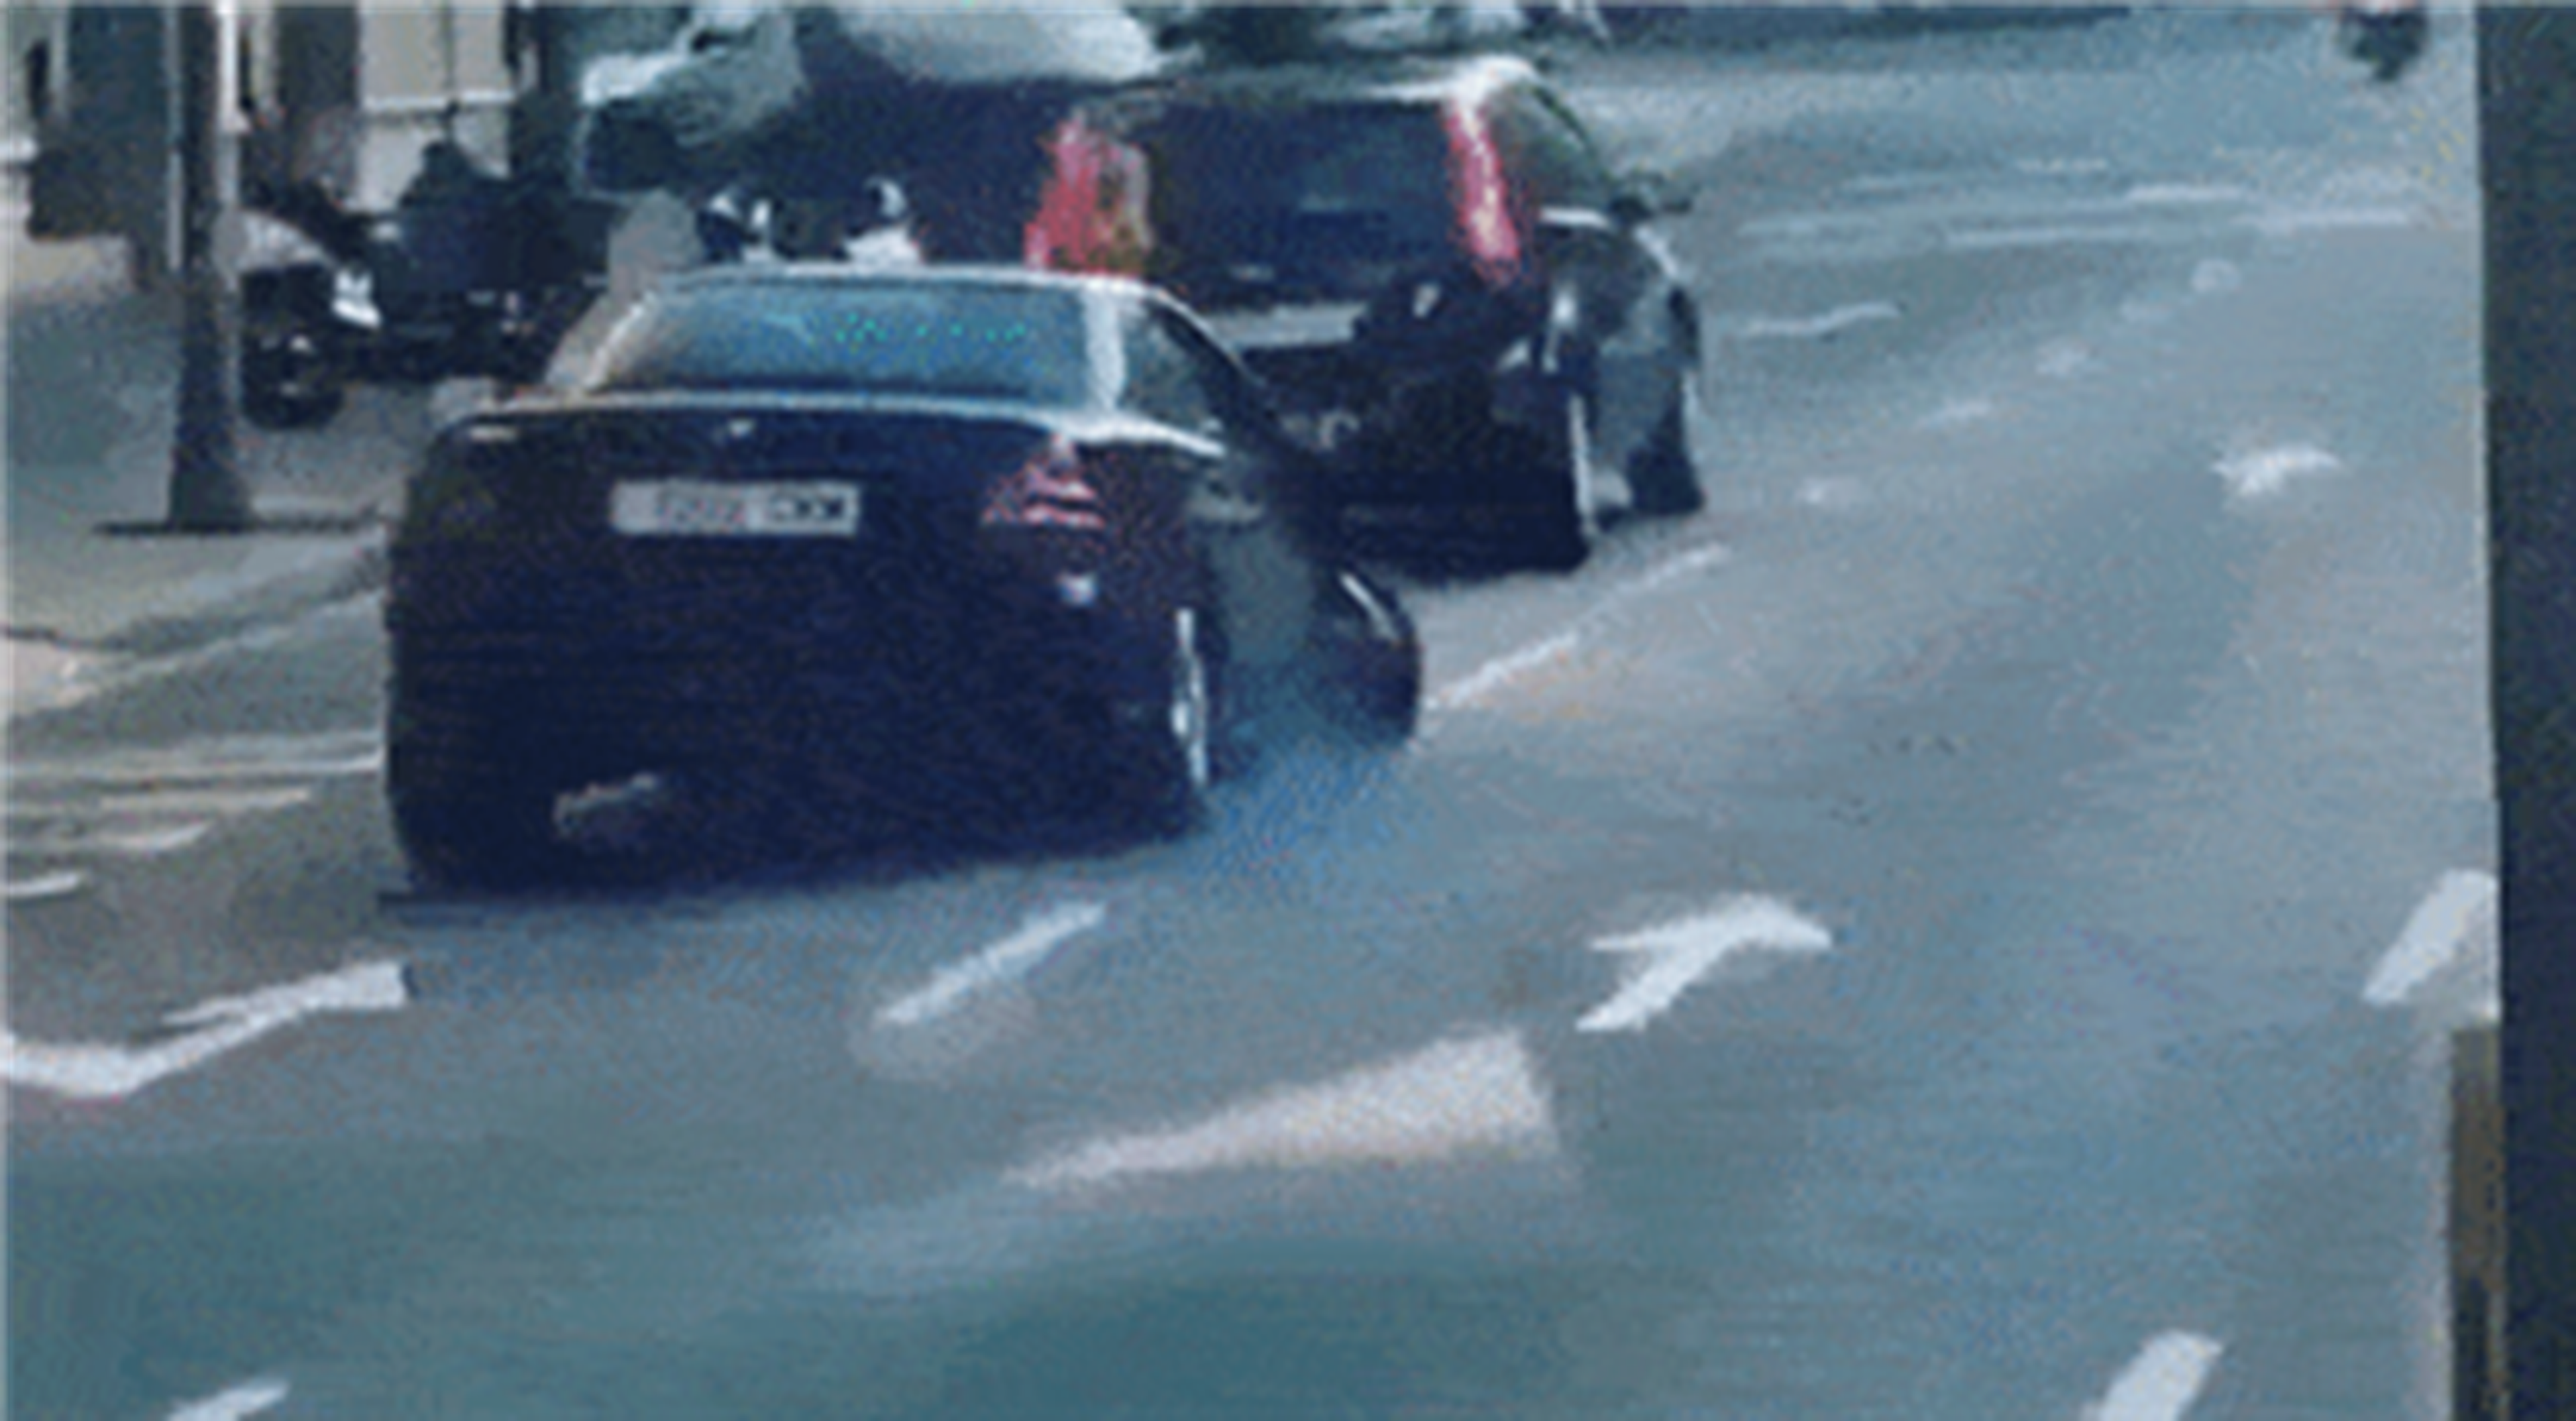 Circula por Barcelona con el Mercedes completamente destrozado